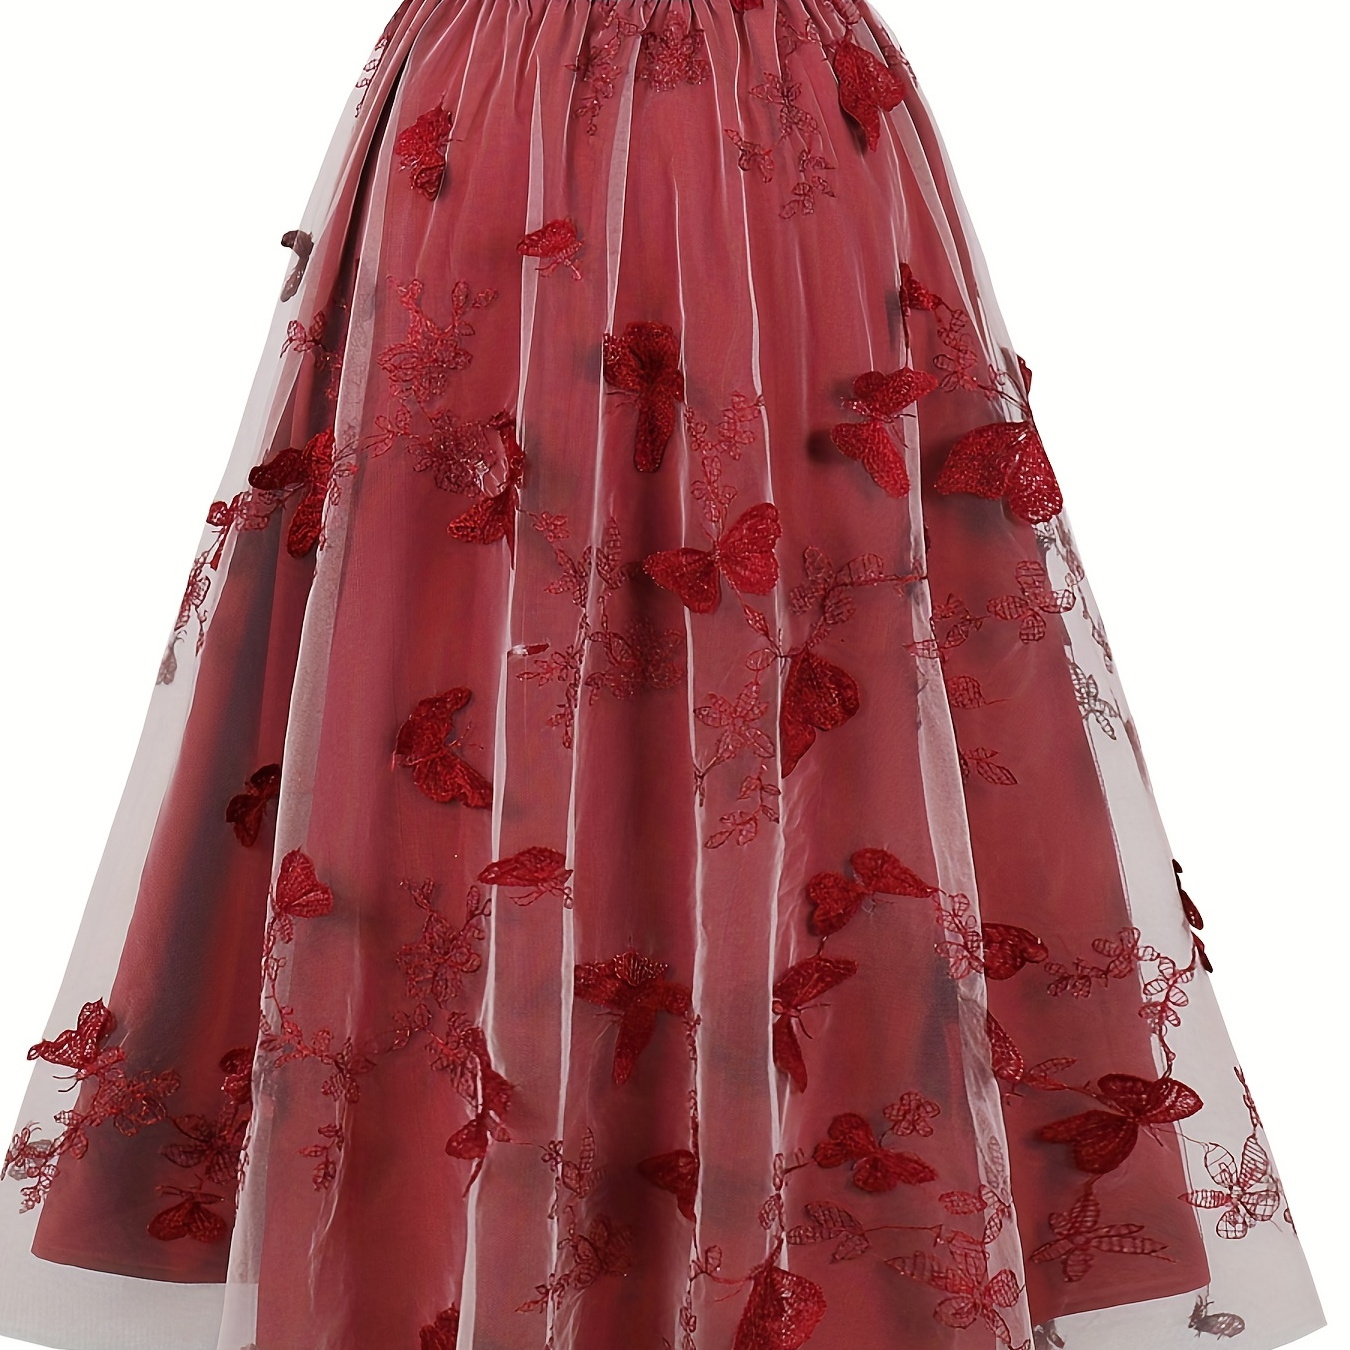 

Floral Print Mesh Overlay Skirt, Elegant Skirt For Spring & Summer, Women's Clothing